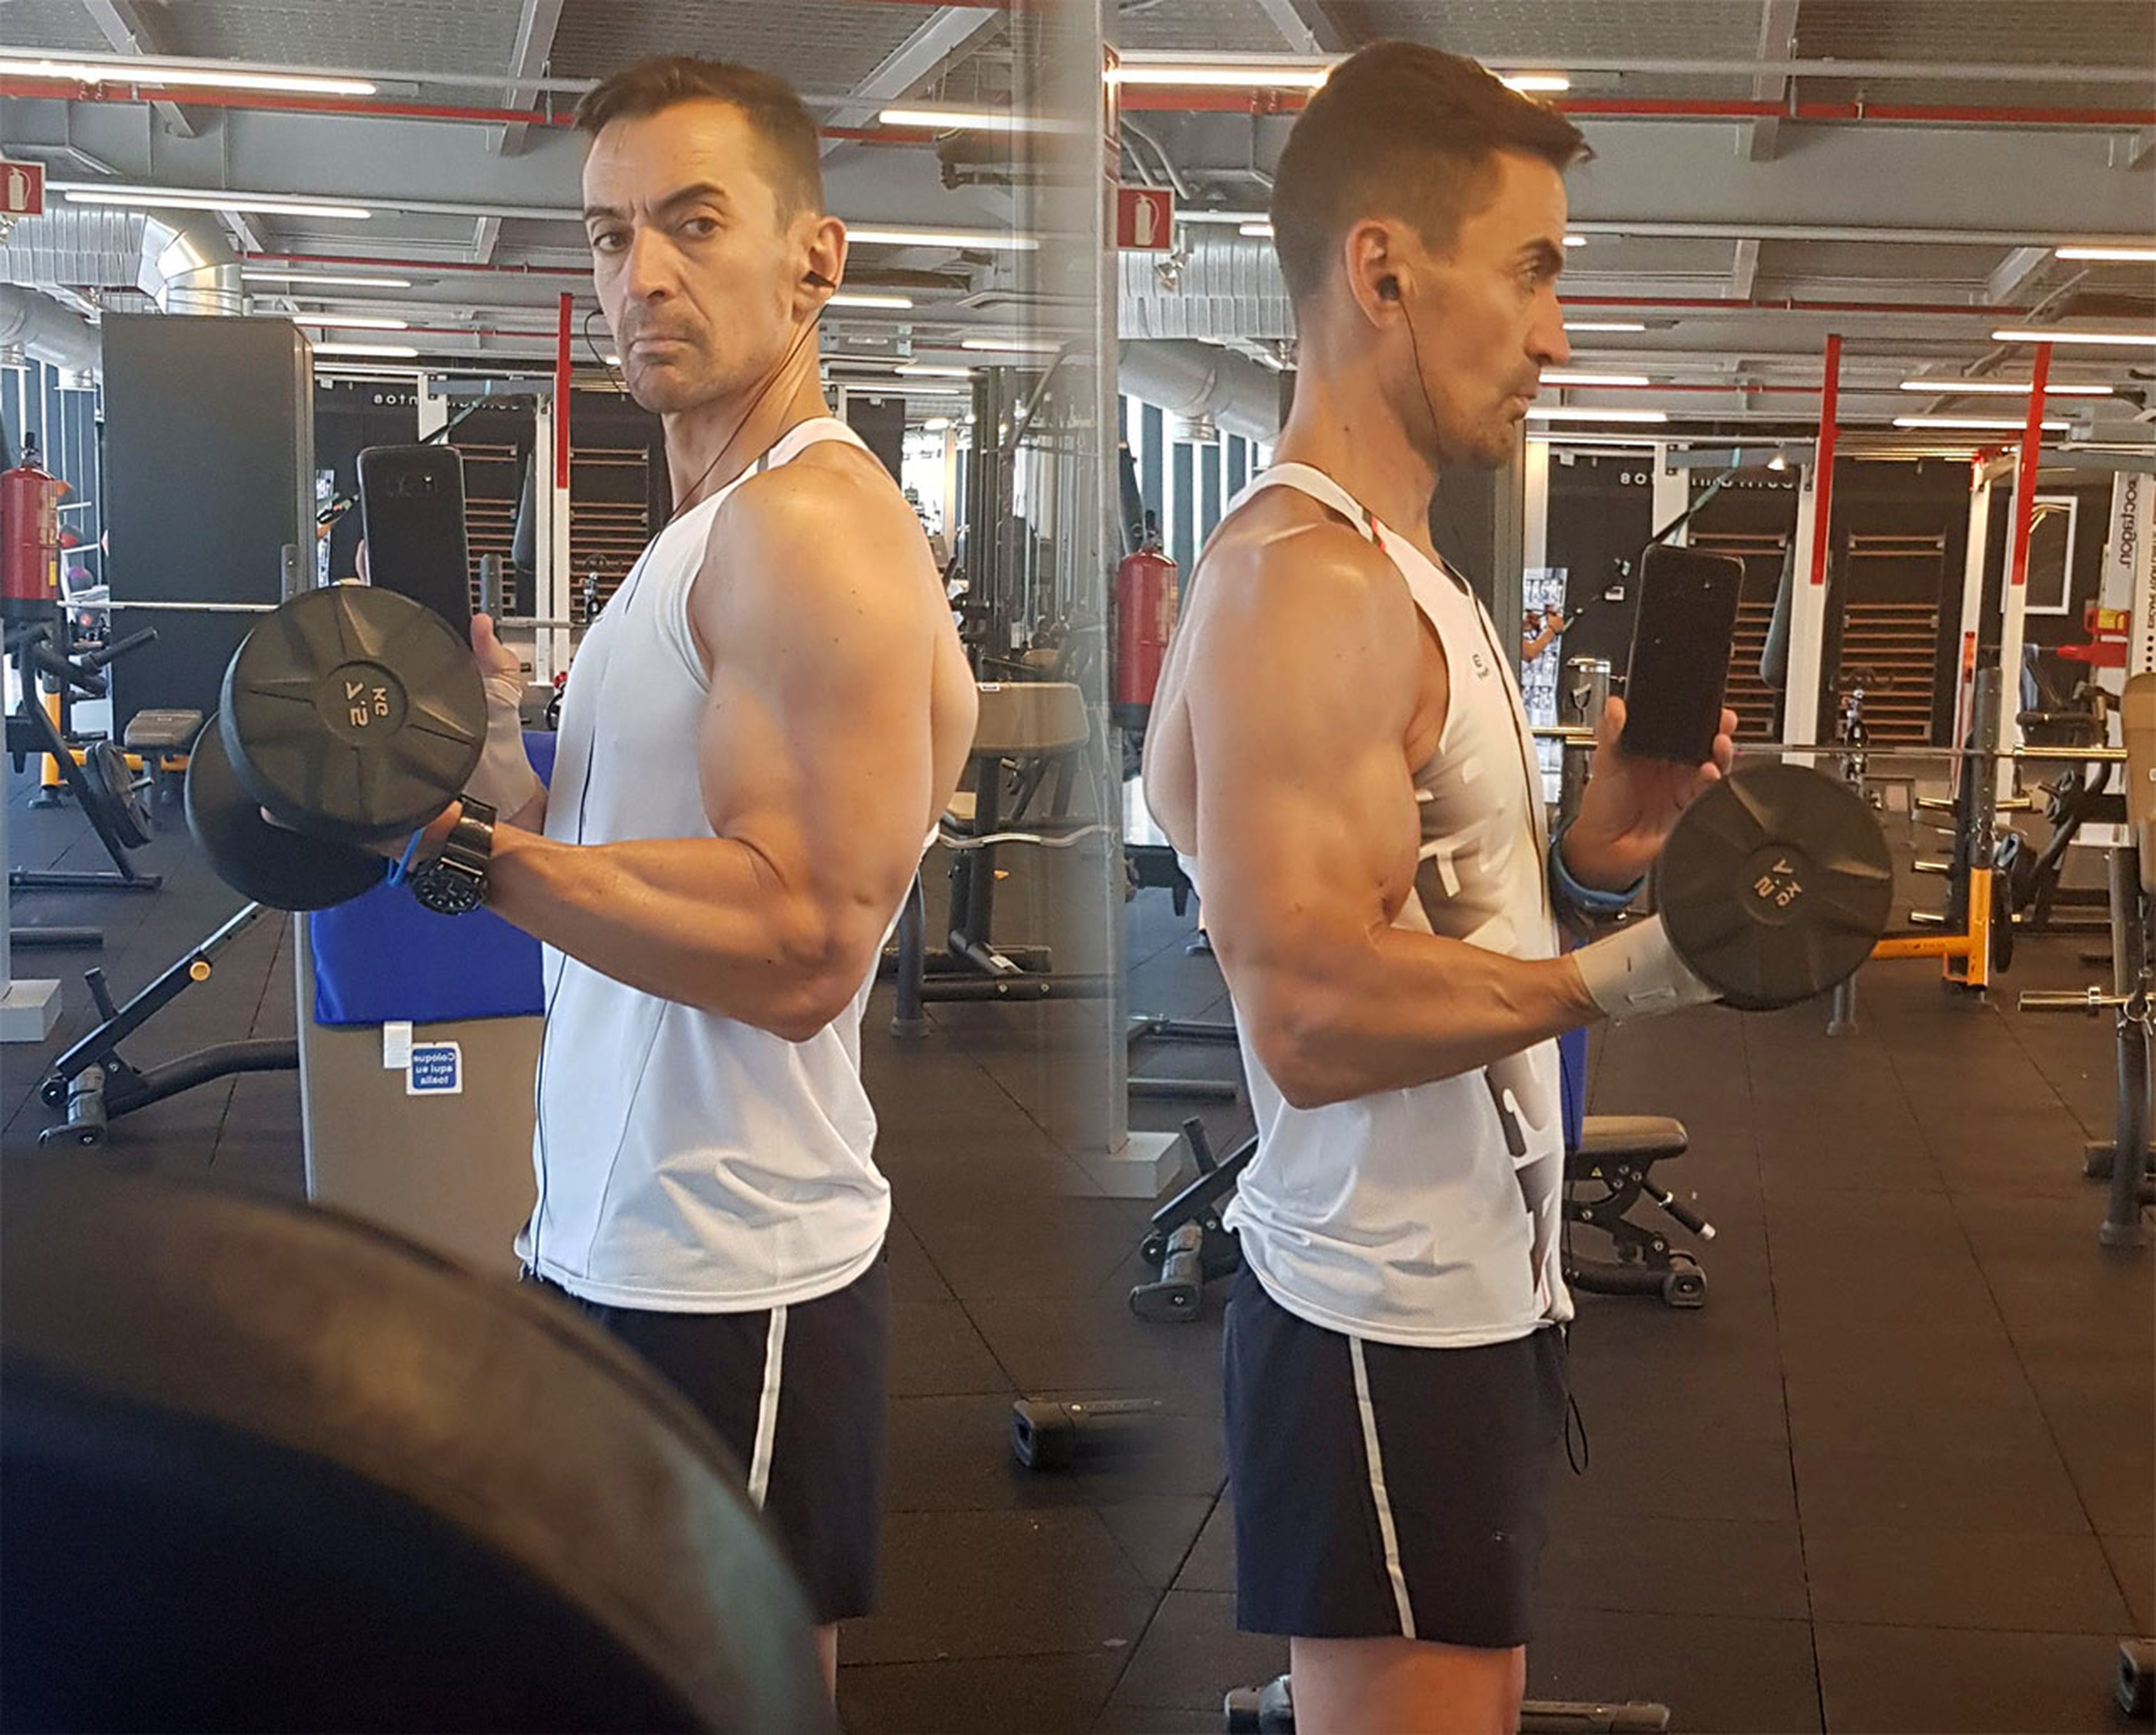 Tras 5 semanas la pérdida de masa muscular y fuerza del brazo inmovilizado (derecha) es apenas perceptible con respecto al brazo sano